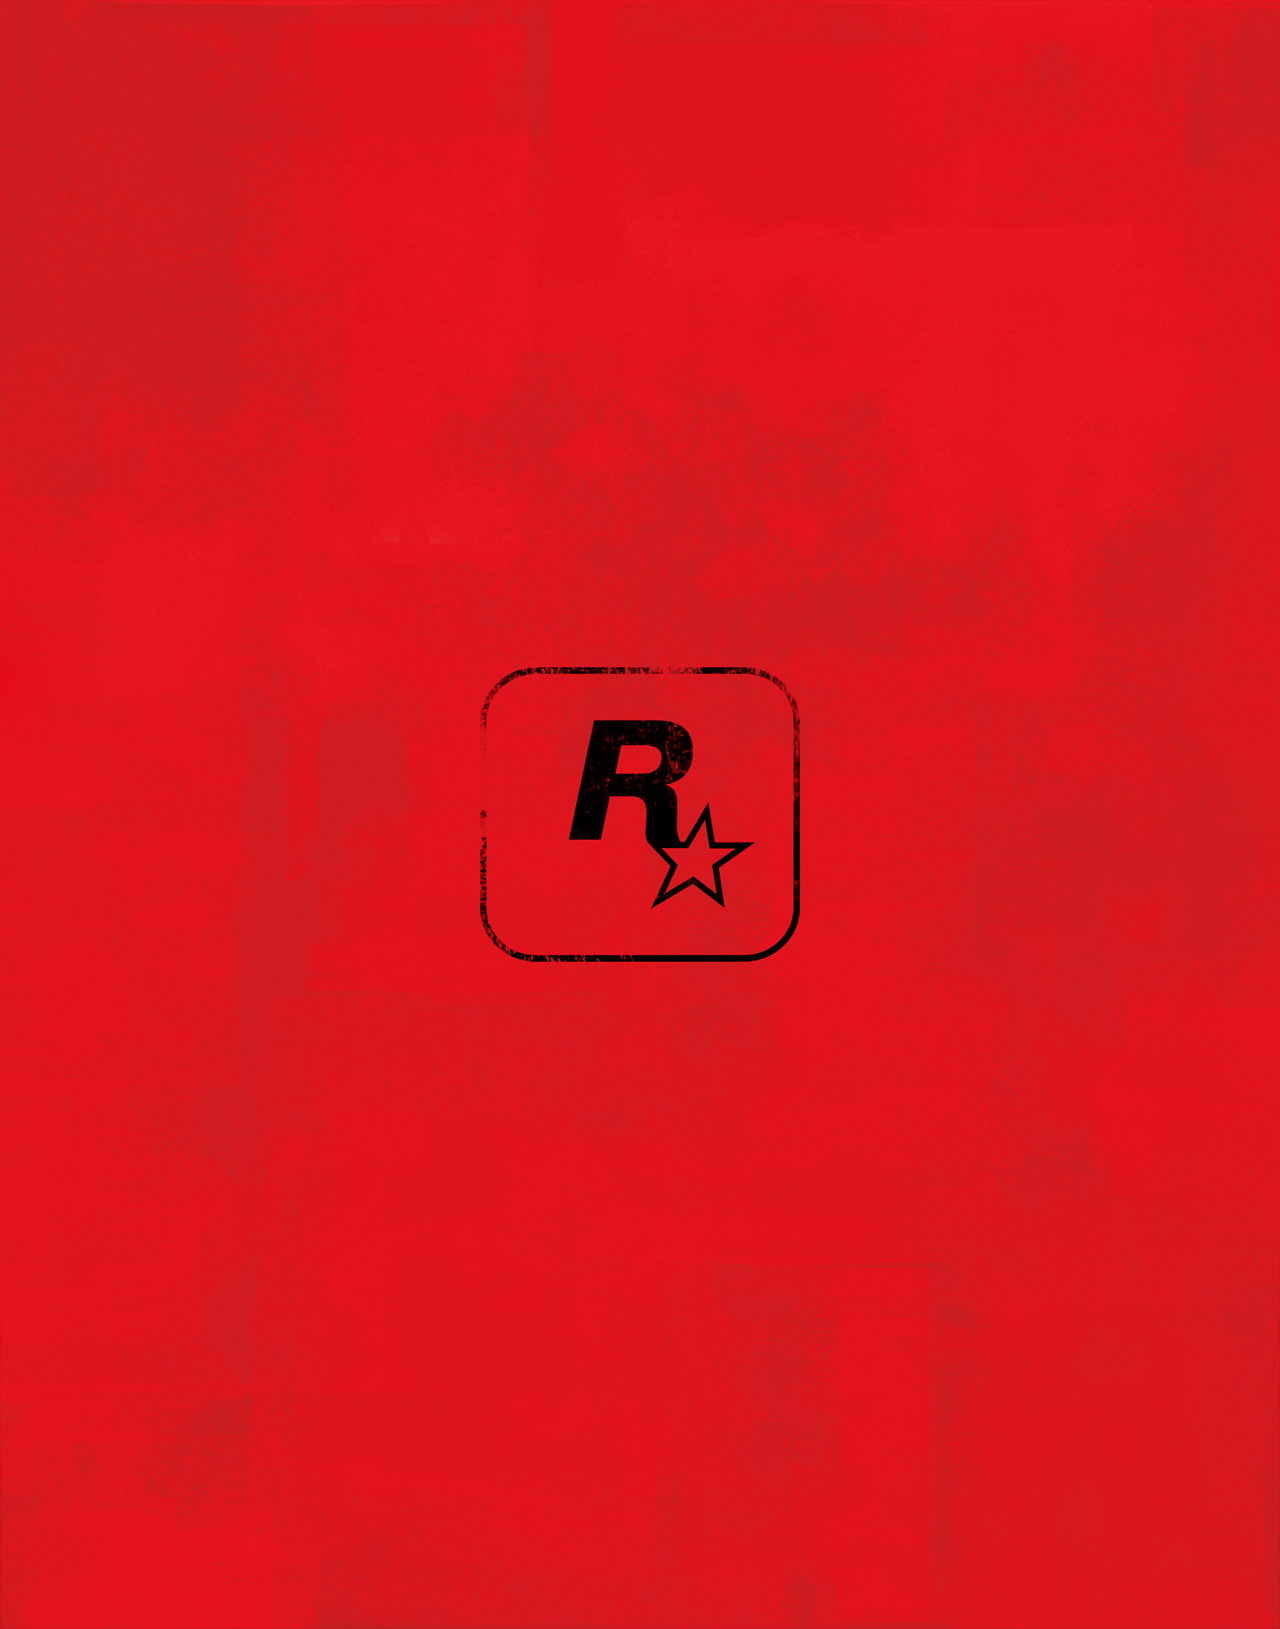 Se disparan los rumores de Red Dead Redemption 2 a partir de una misteriosa imagen publicada por Rockstar Games